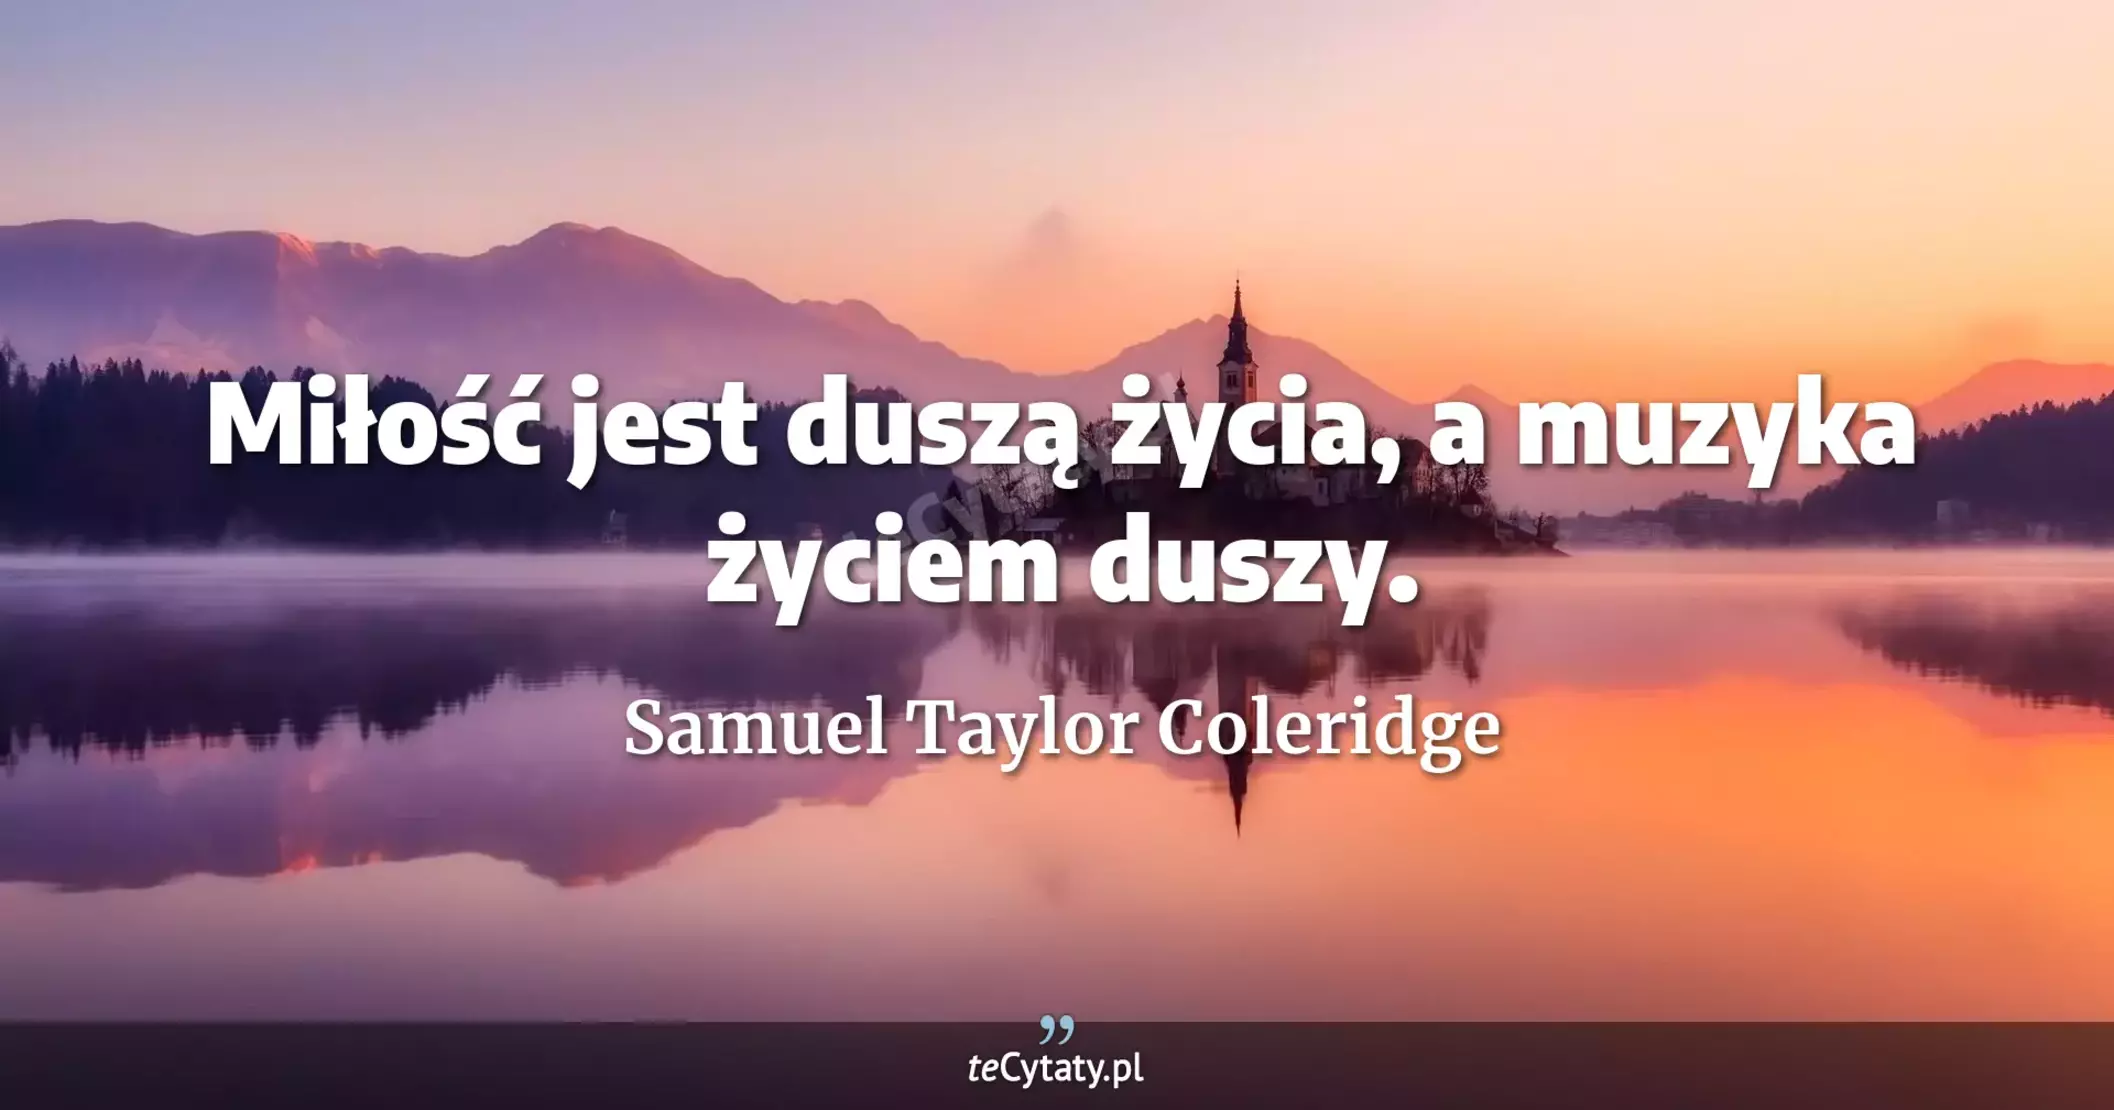 Miłość jest duszą życia, a muzyka życiem duszy. - Samuel Taylor Coleridge